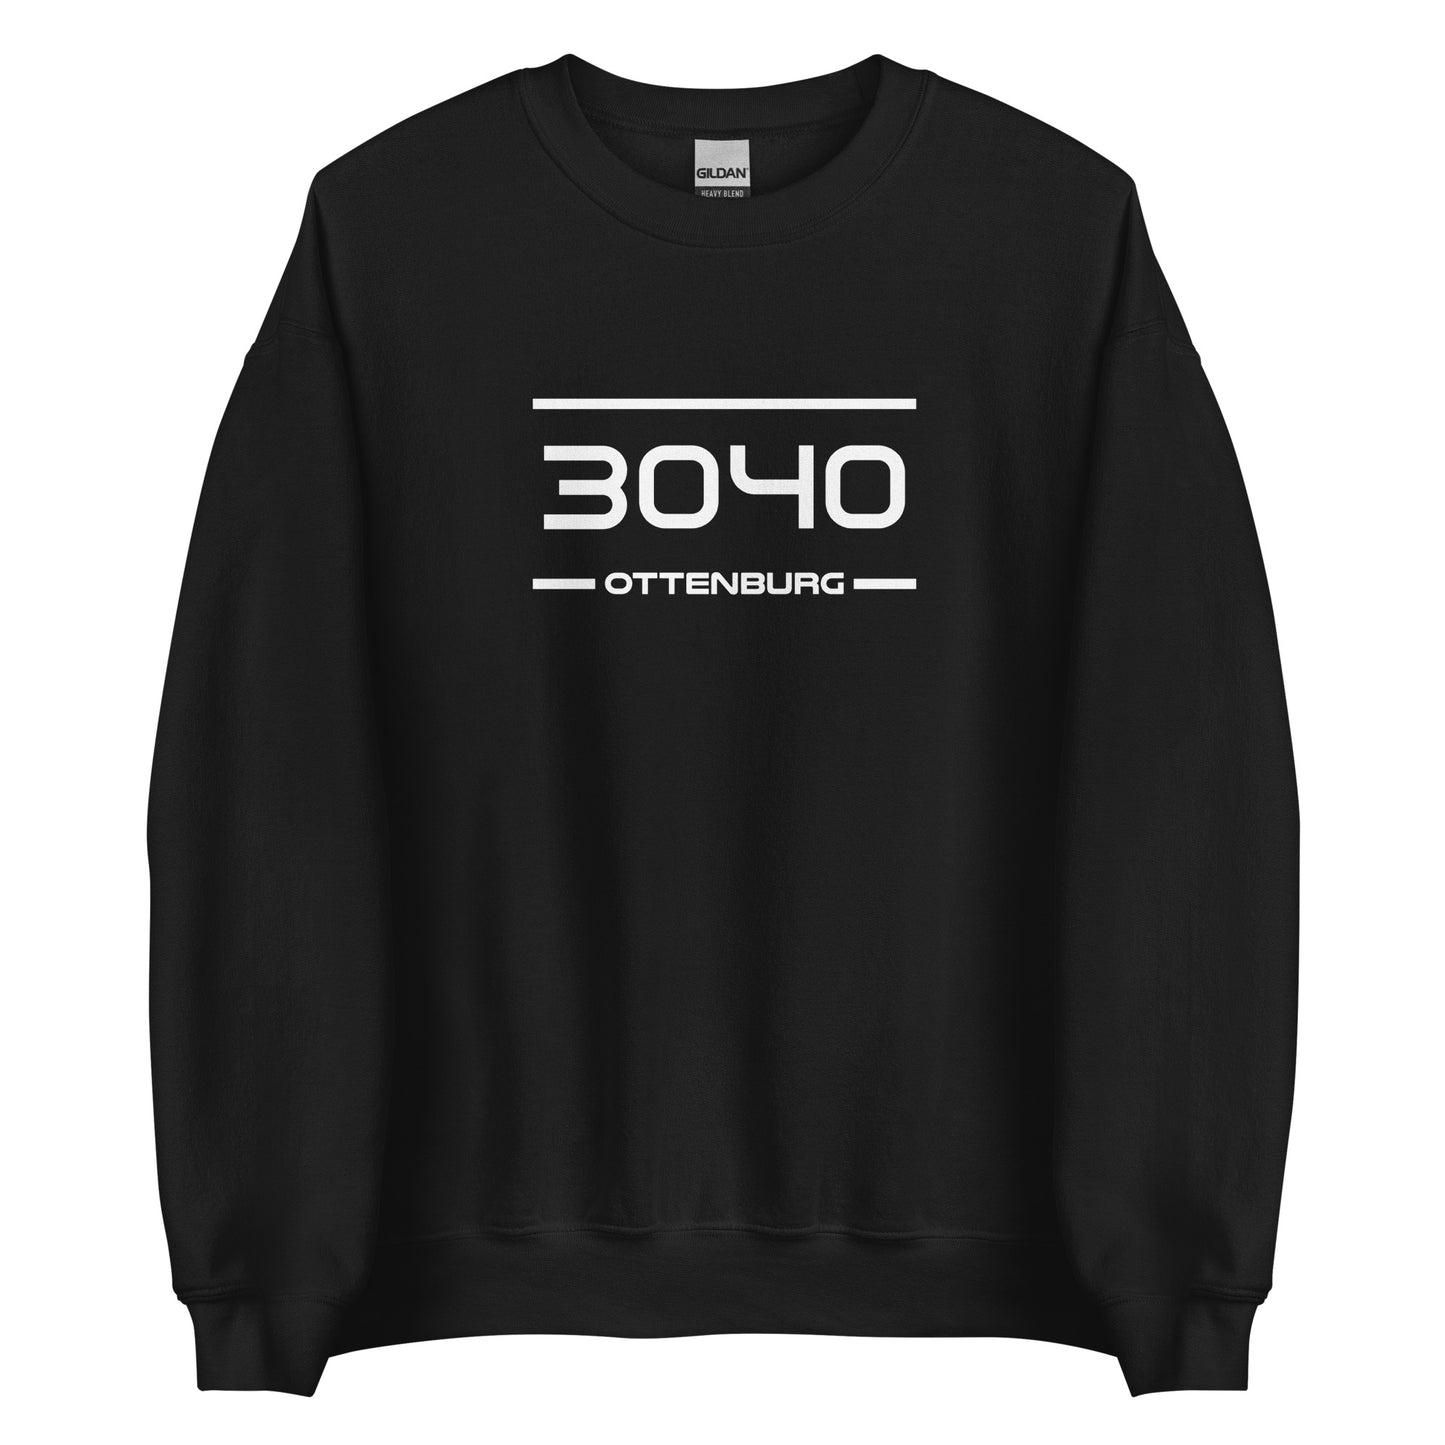 Sweater - 3040 - Ottenburg (M/V)